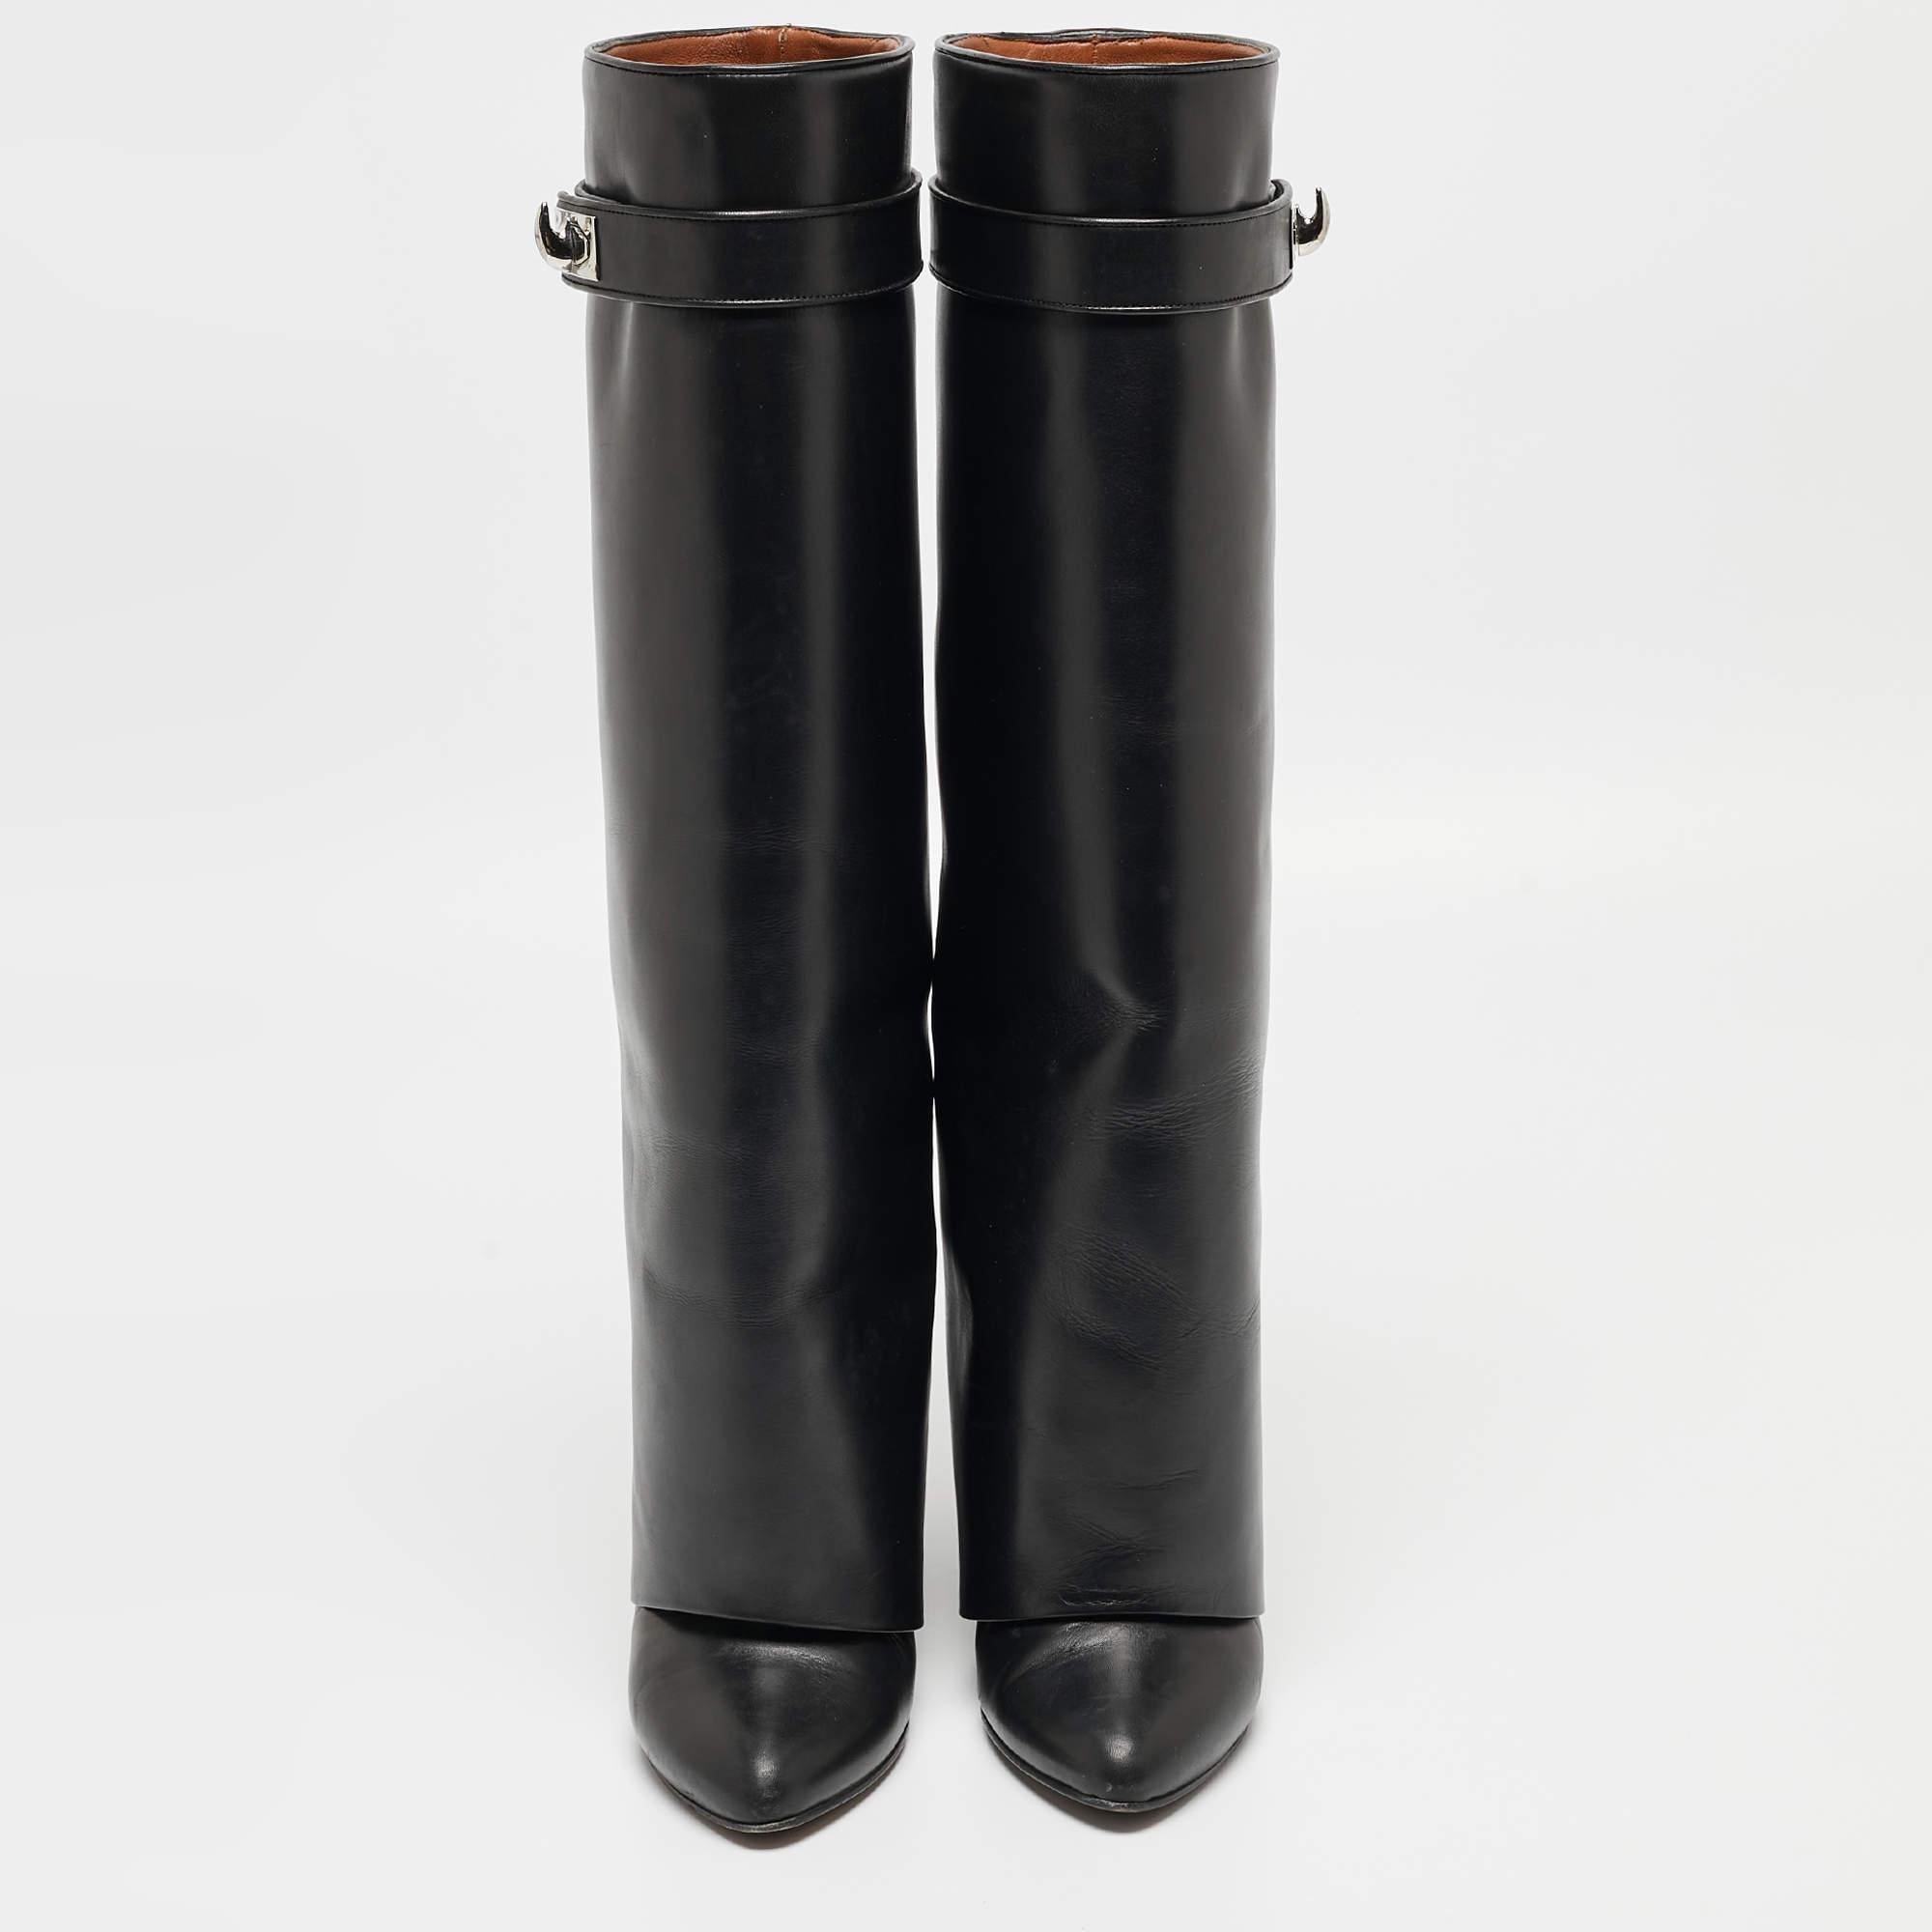 Confectionnées dans un noir élégant, ces bottes Givenchy nous séduisent. Conçues pour faire sensation, elles présentent une silhouette élégante et une belle coupe. Portez-les sous des jupes maxi pour une touche de glamour, ou laissez-les briller